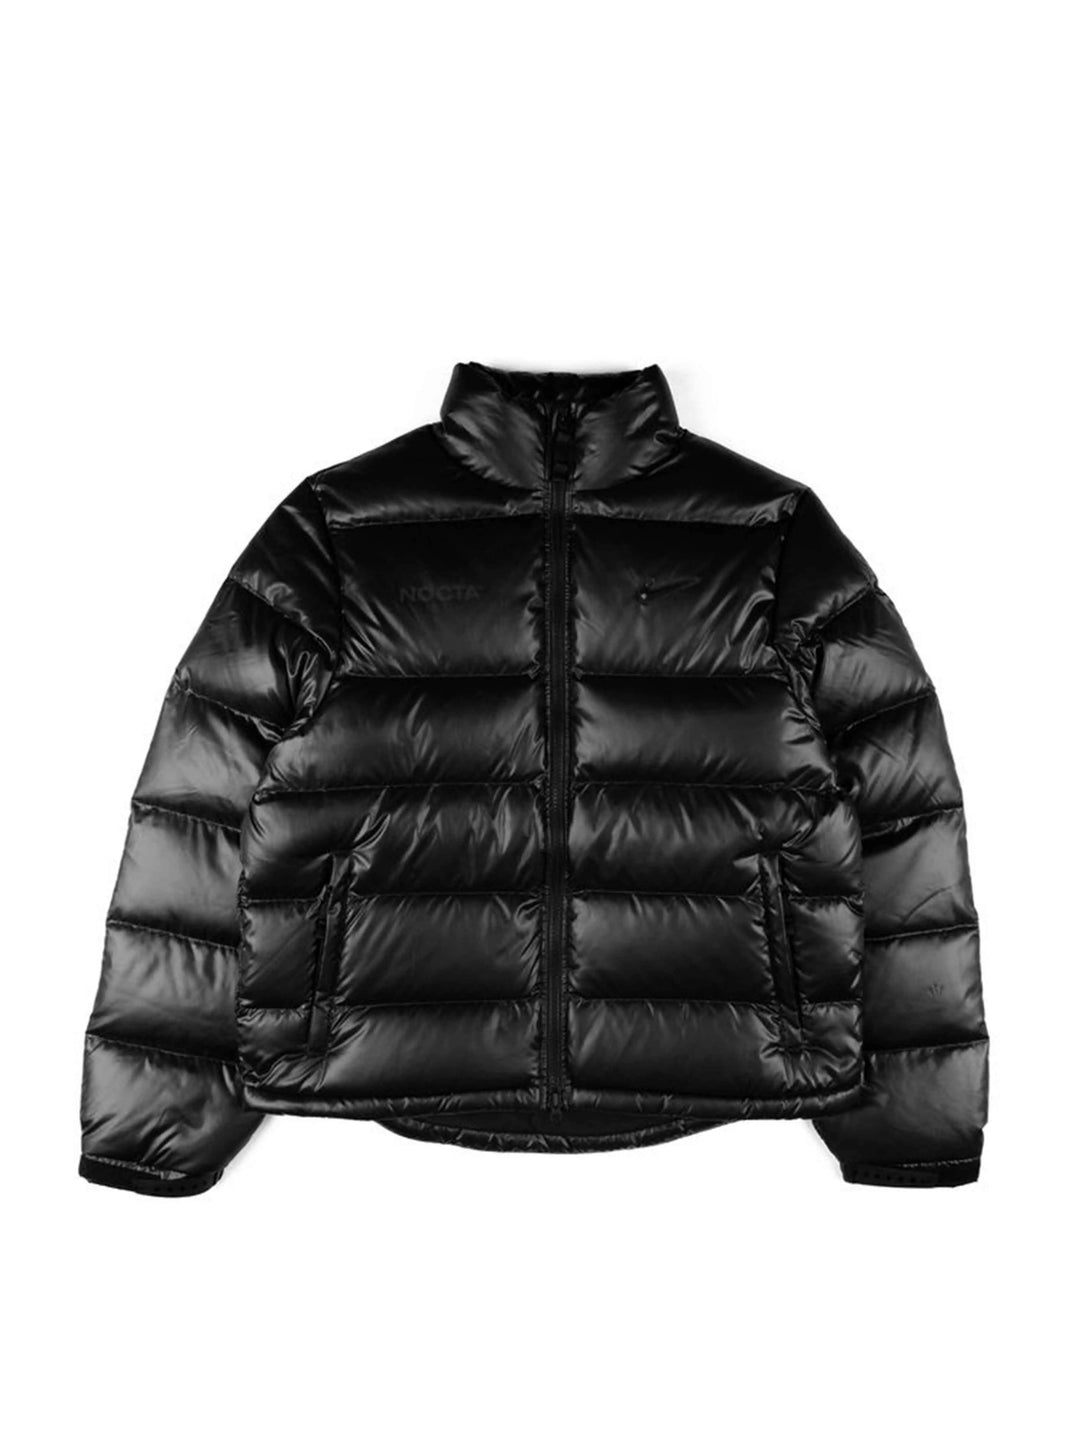 Nike x Drake NOCTA Puffer Jacket Black Prior